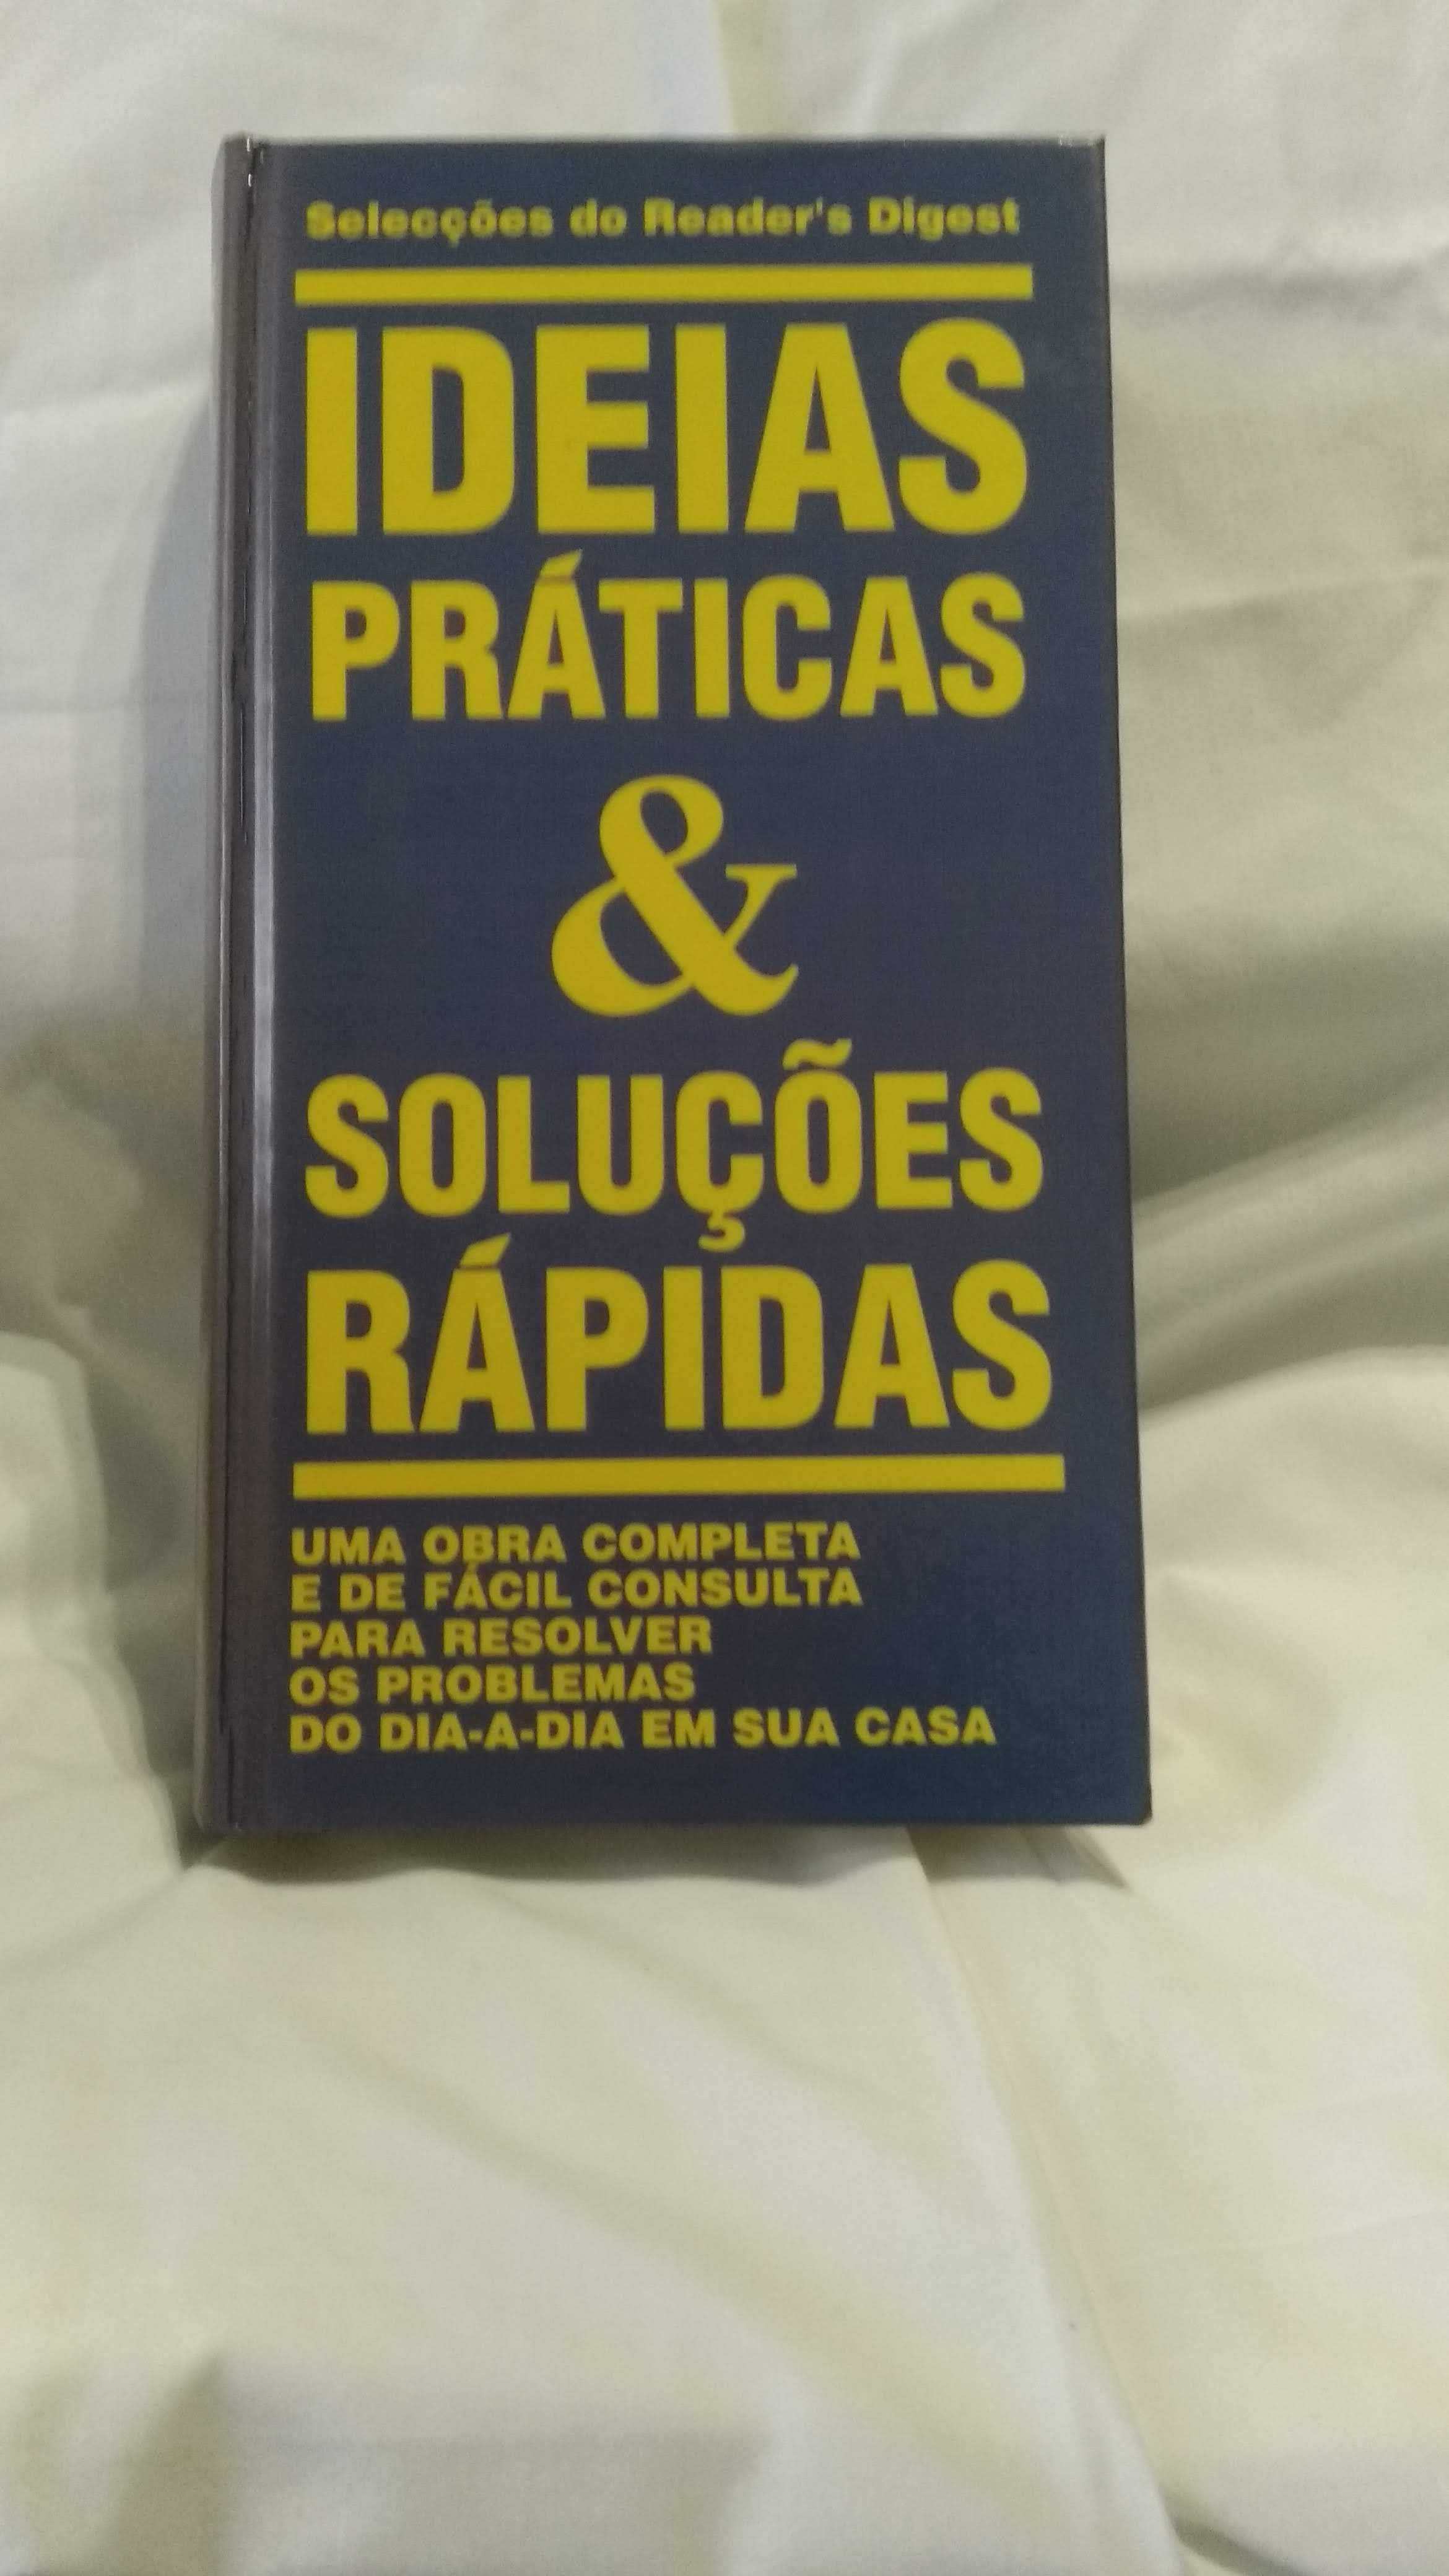 Livro "Ideias Práticas & Soluções Rápidas"